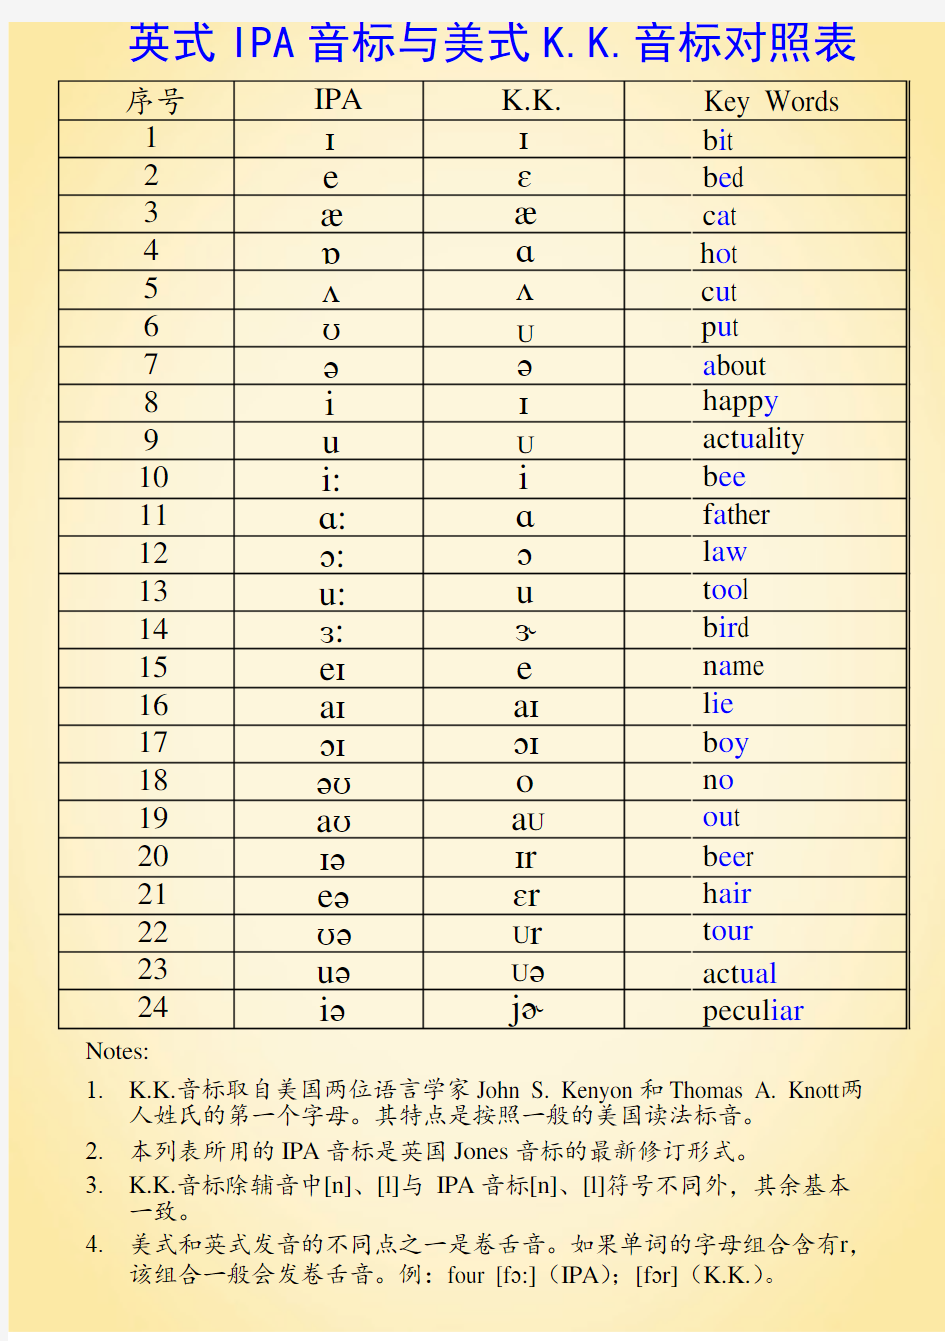 英式IPA音标和美式K.K.音标对照表